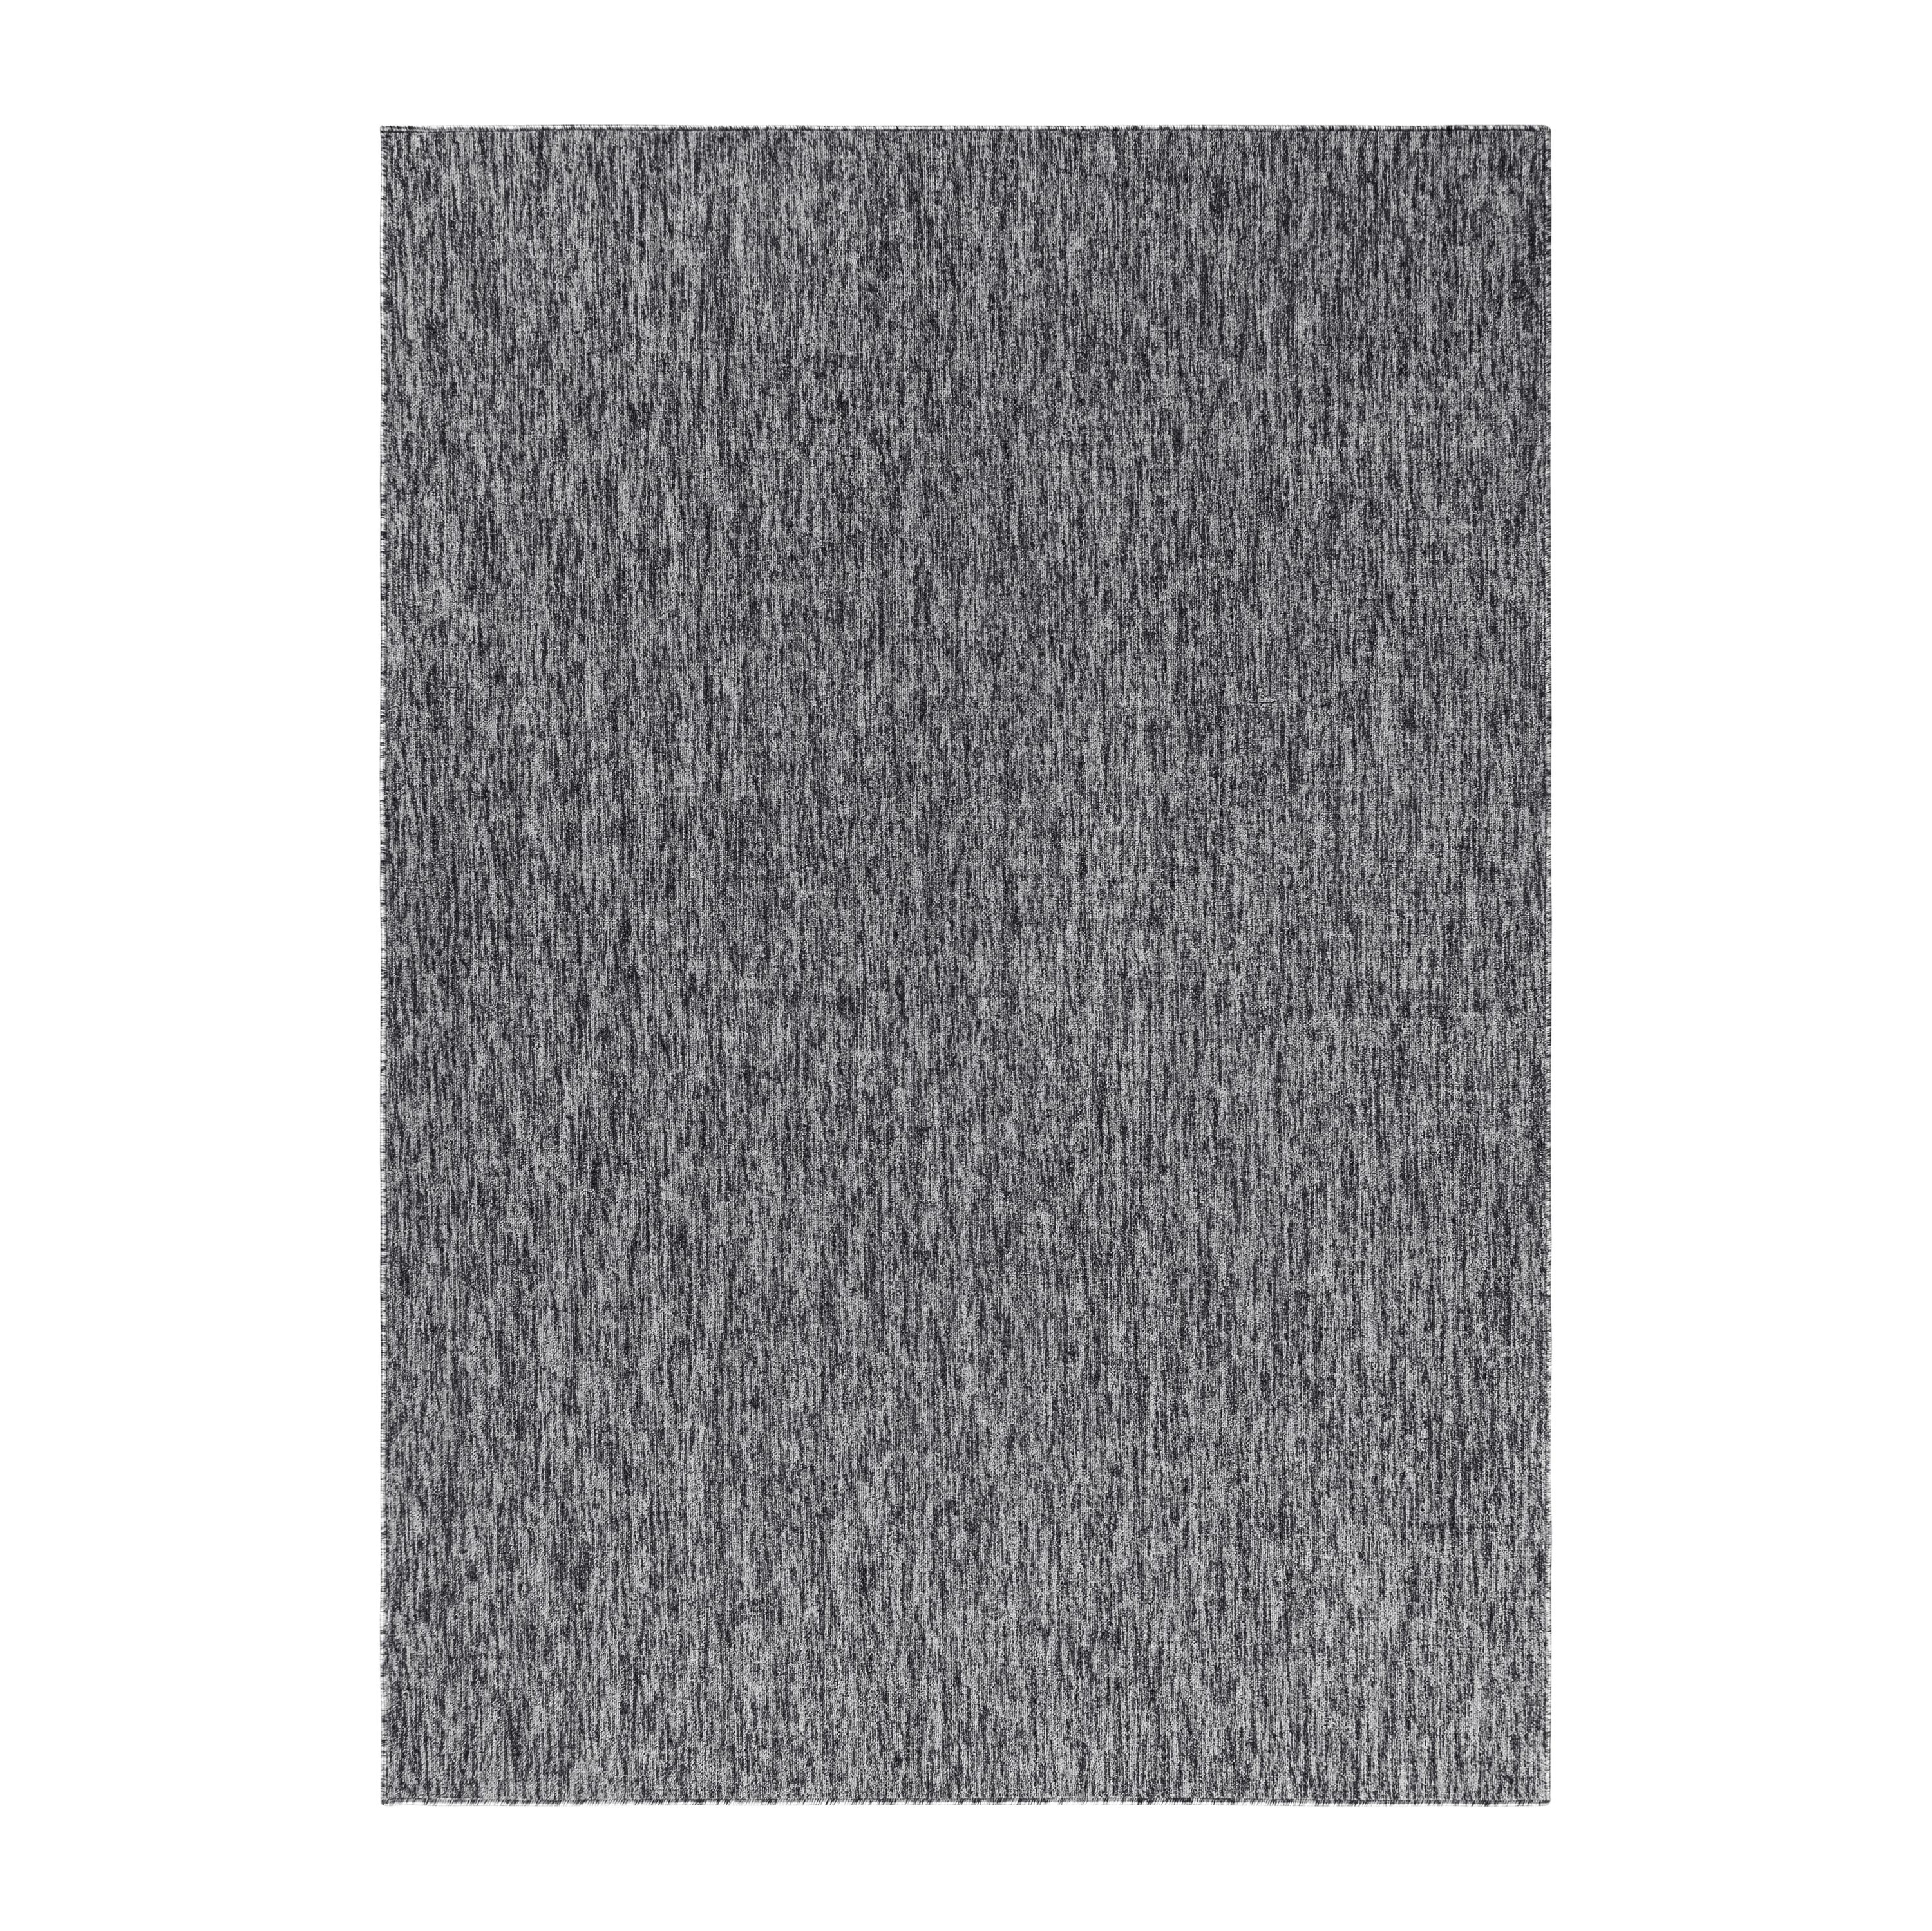 Kurzflor Wohnzimmer Teppich Einfarbig Flachgewebe Grau meliert glänzend